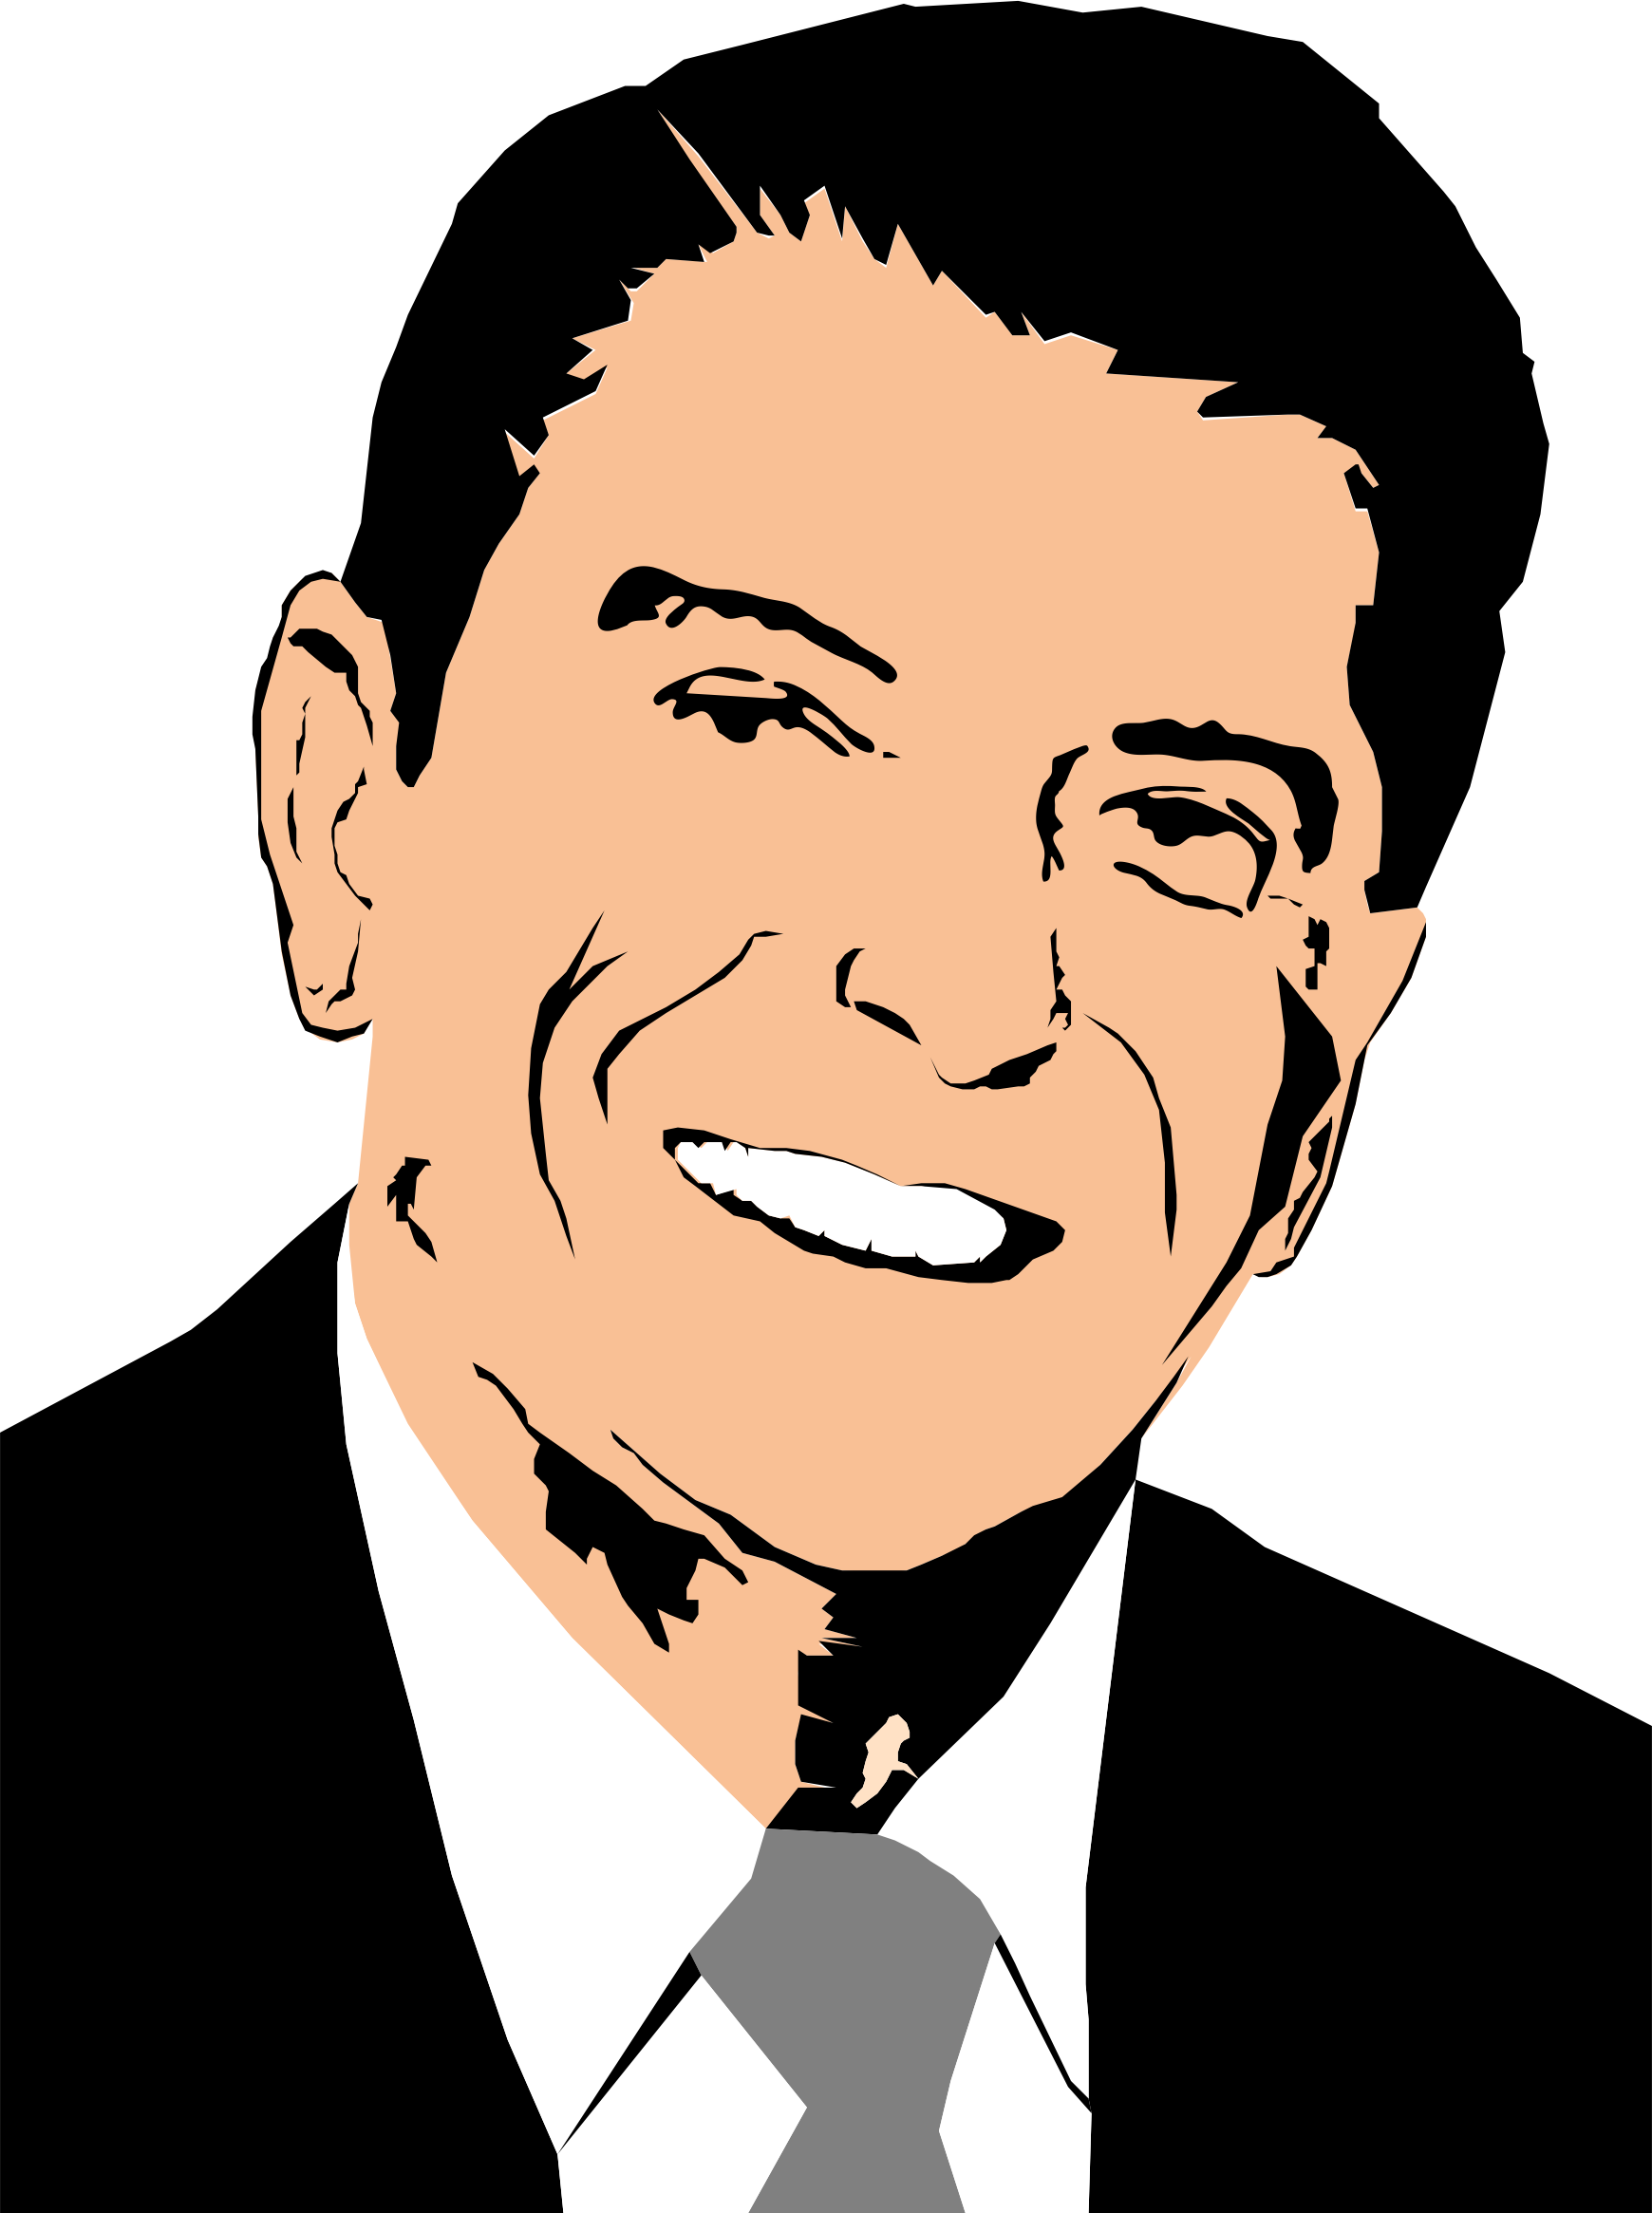 Big Image - Ronald Reagan Cartoon Face (1740x2331)